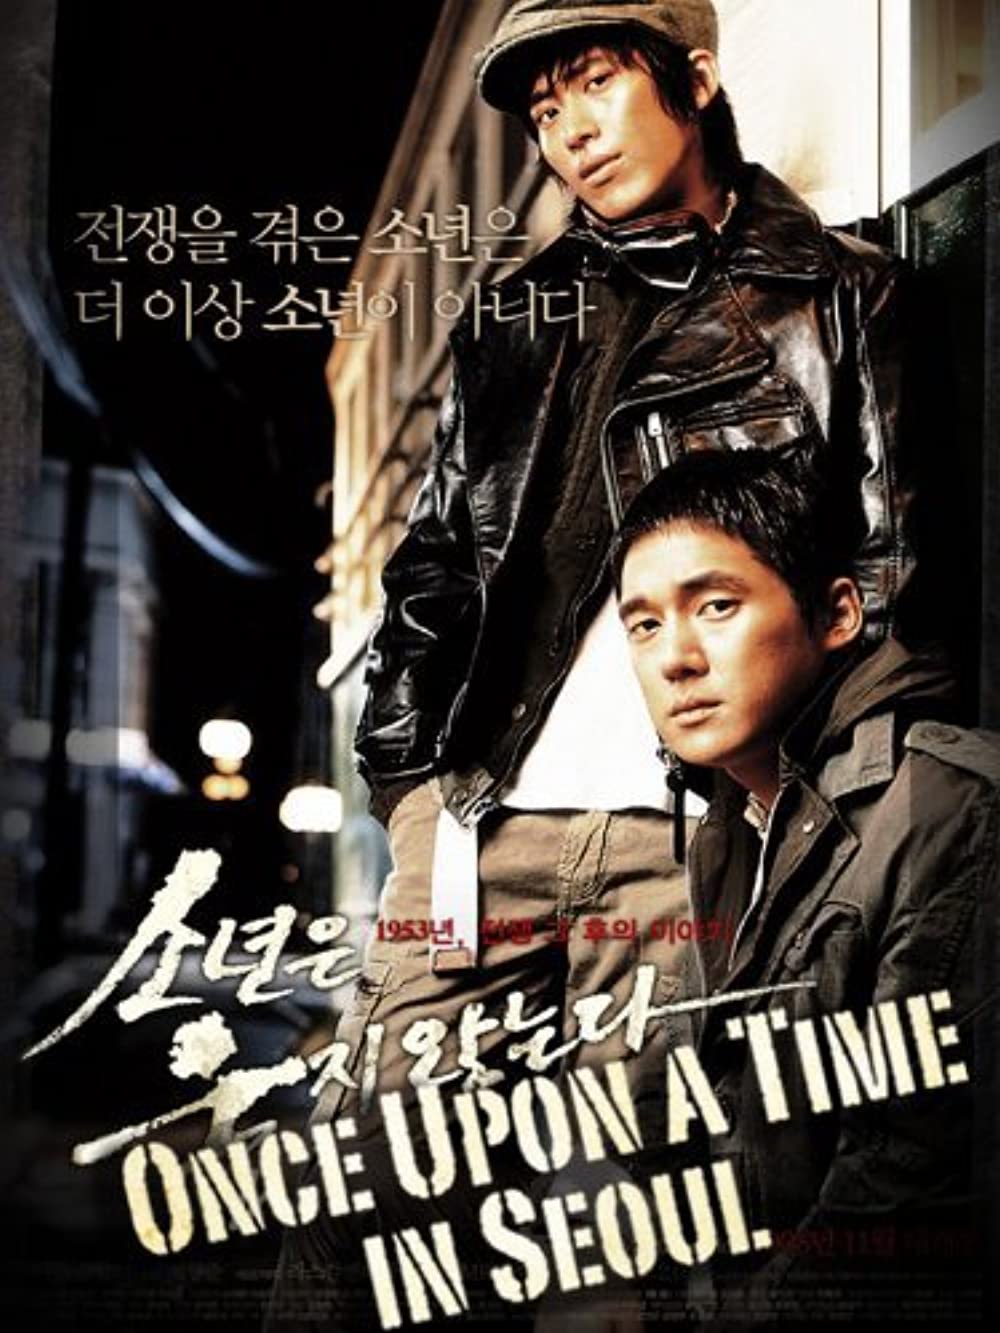 Download So-nyeon-eun wool-ji anh-neun-da Movie | So-nyeon-eun Wool-ji Anh-neun-da Full Movie